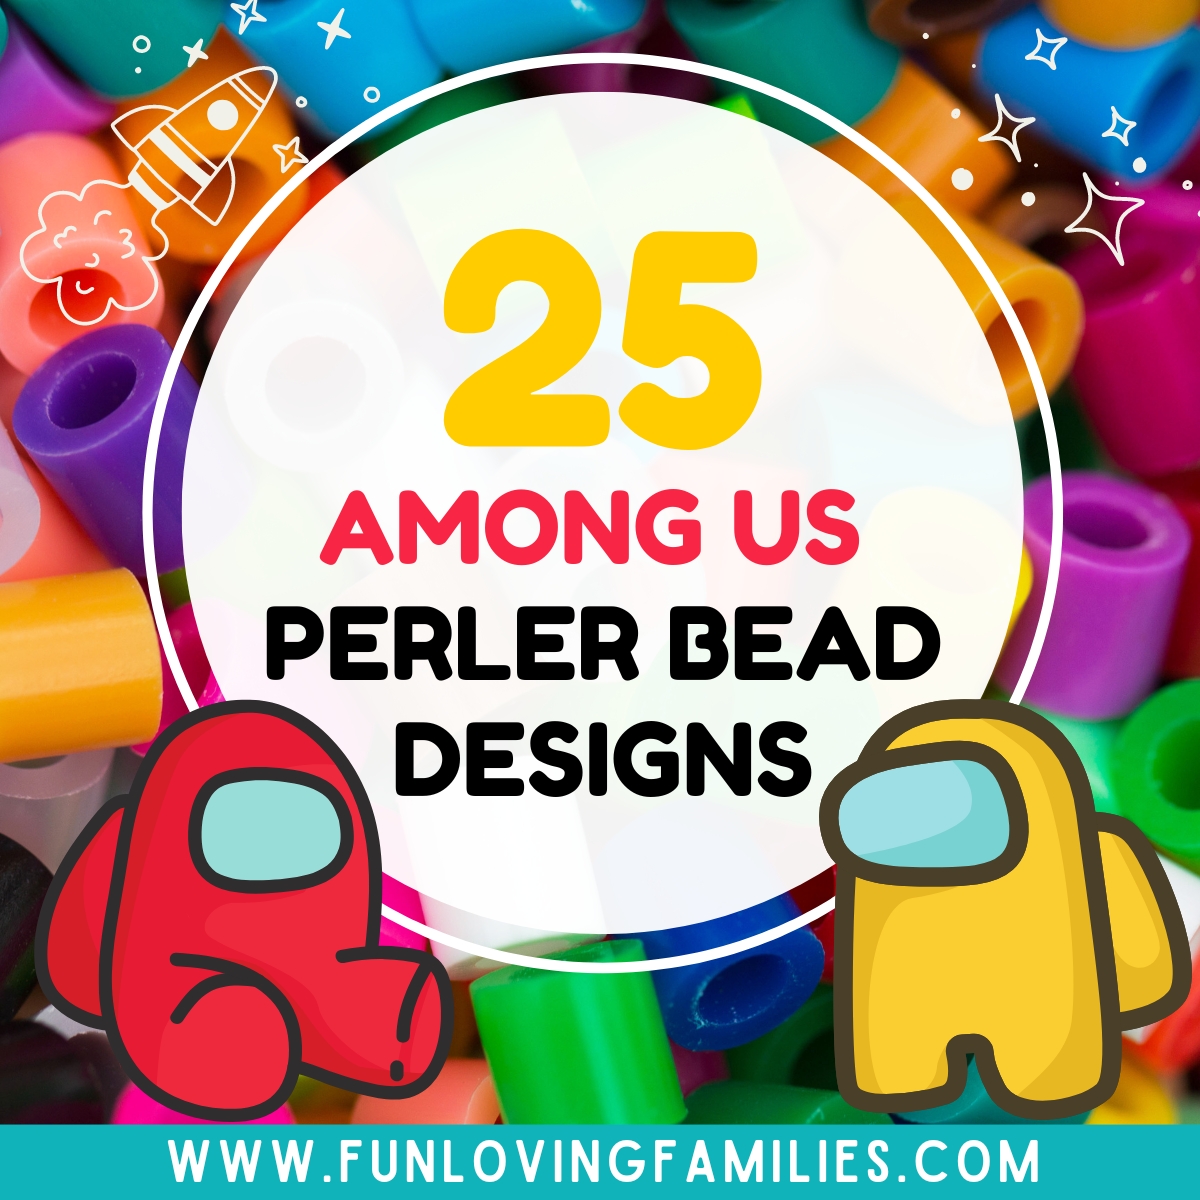 Among Us Perler Bead Patterns